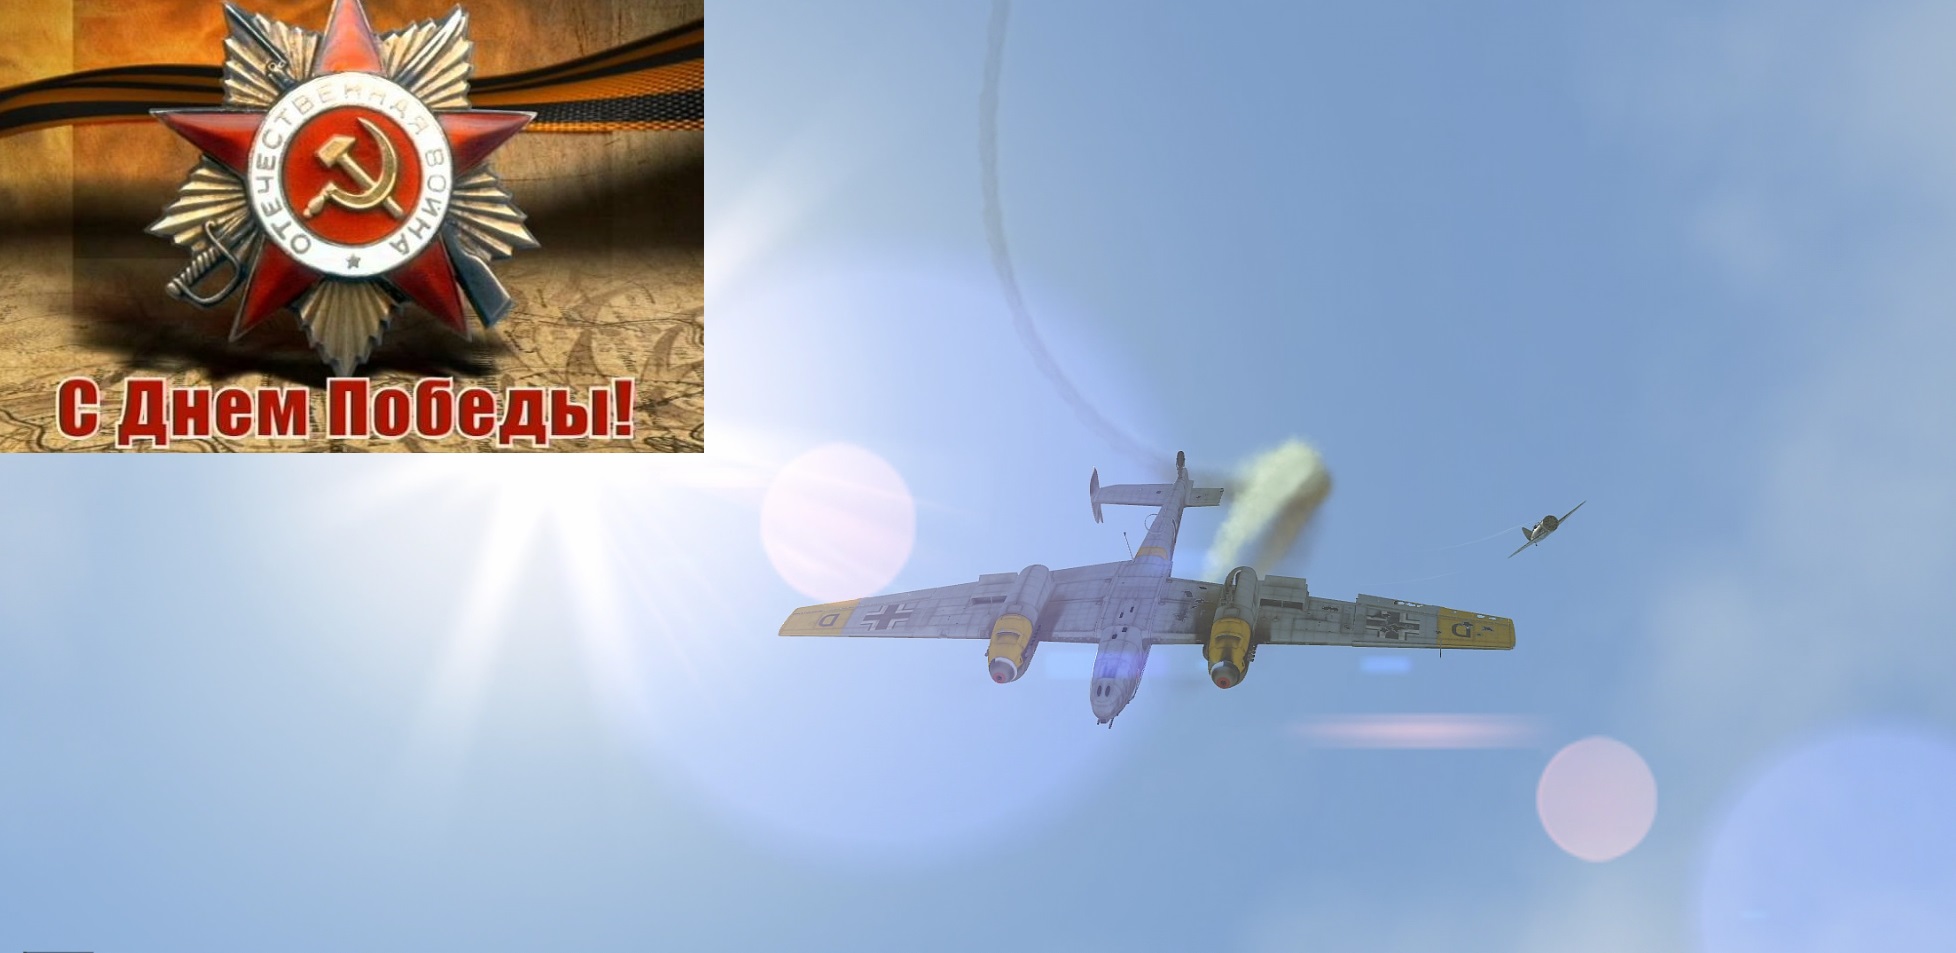 И-16 против Bf 110, удачно расстрелял рули и крыло.